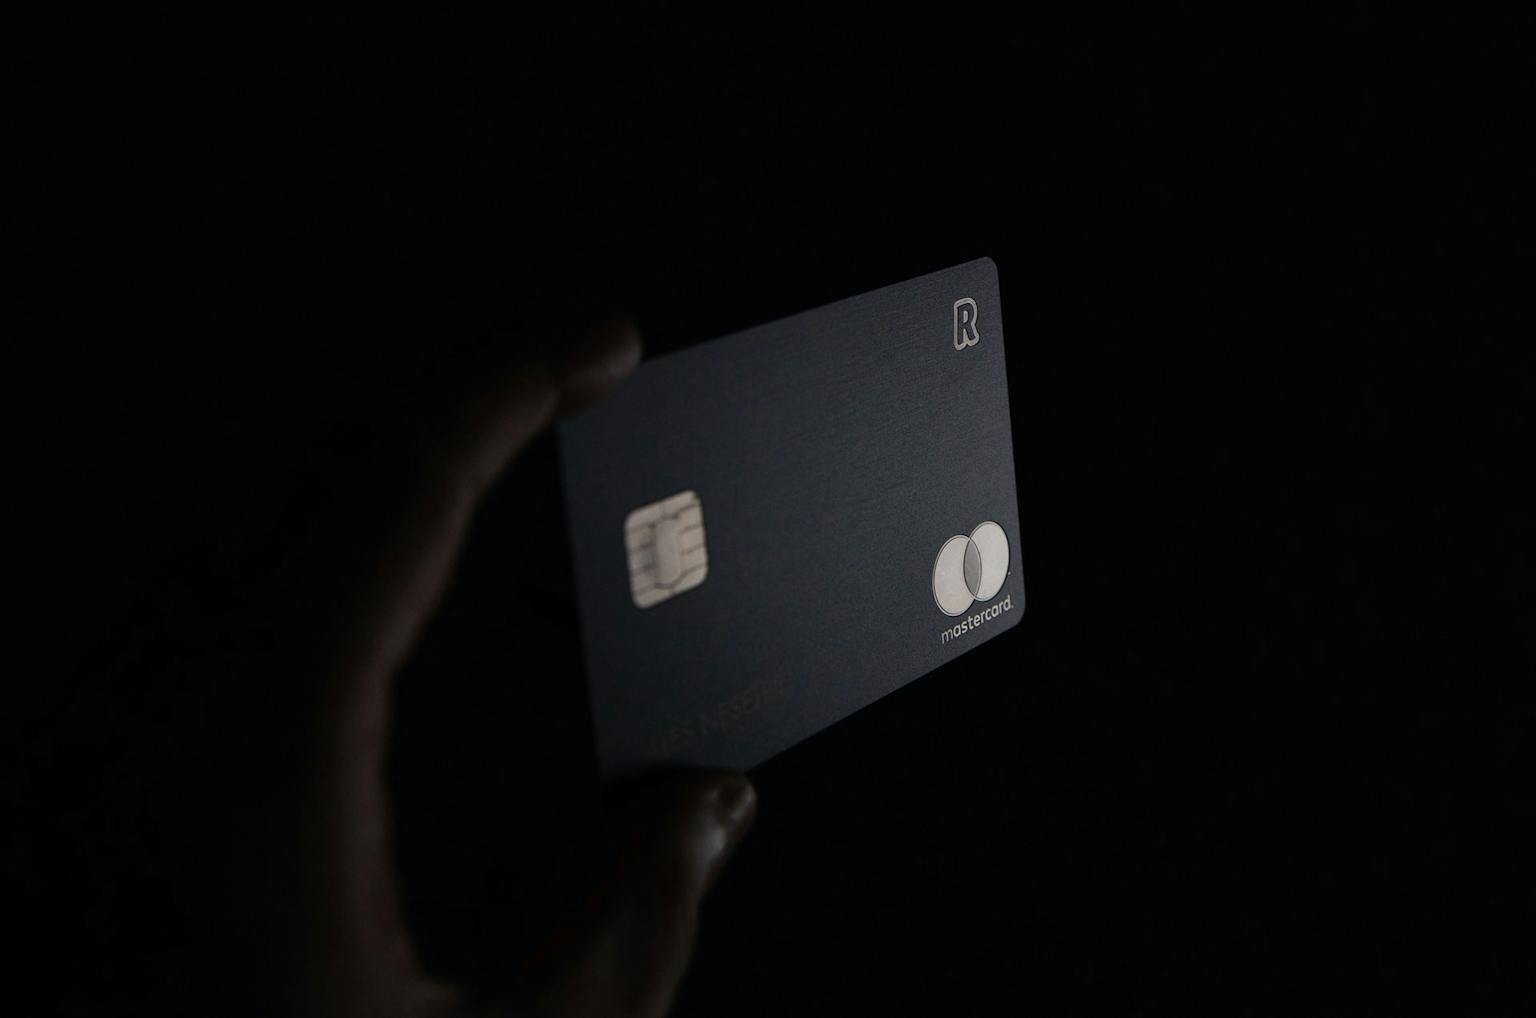 บัตรเครดิตและบัตรกดเงินสดเพื่อเยียวยาลูกหนี้​